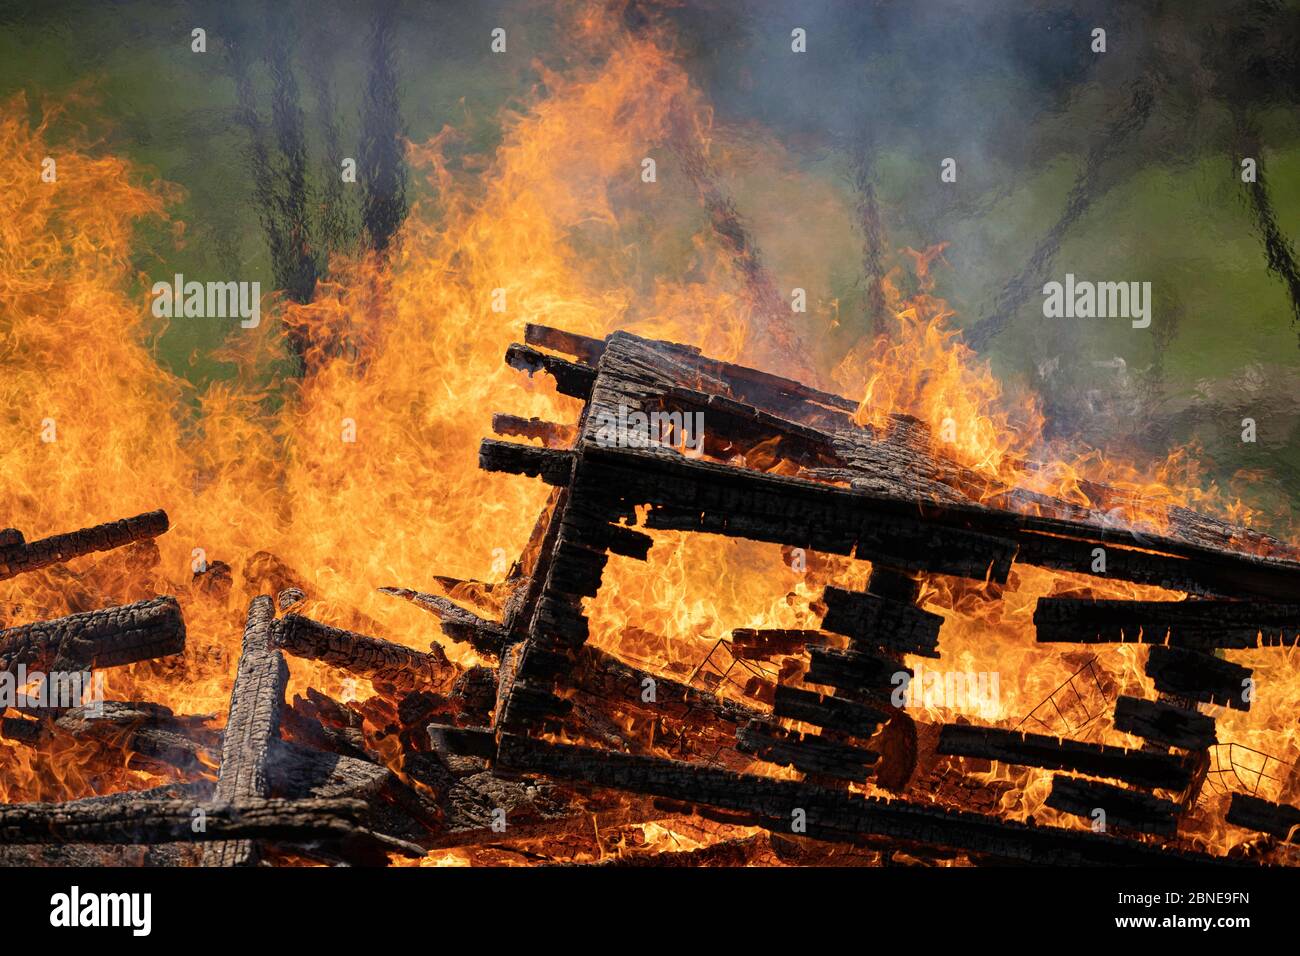 cabane en bois démolie incendiée après démolition Banque D'Images